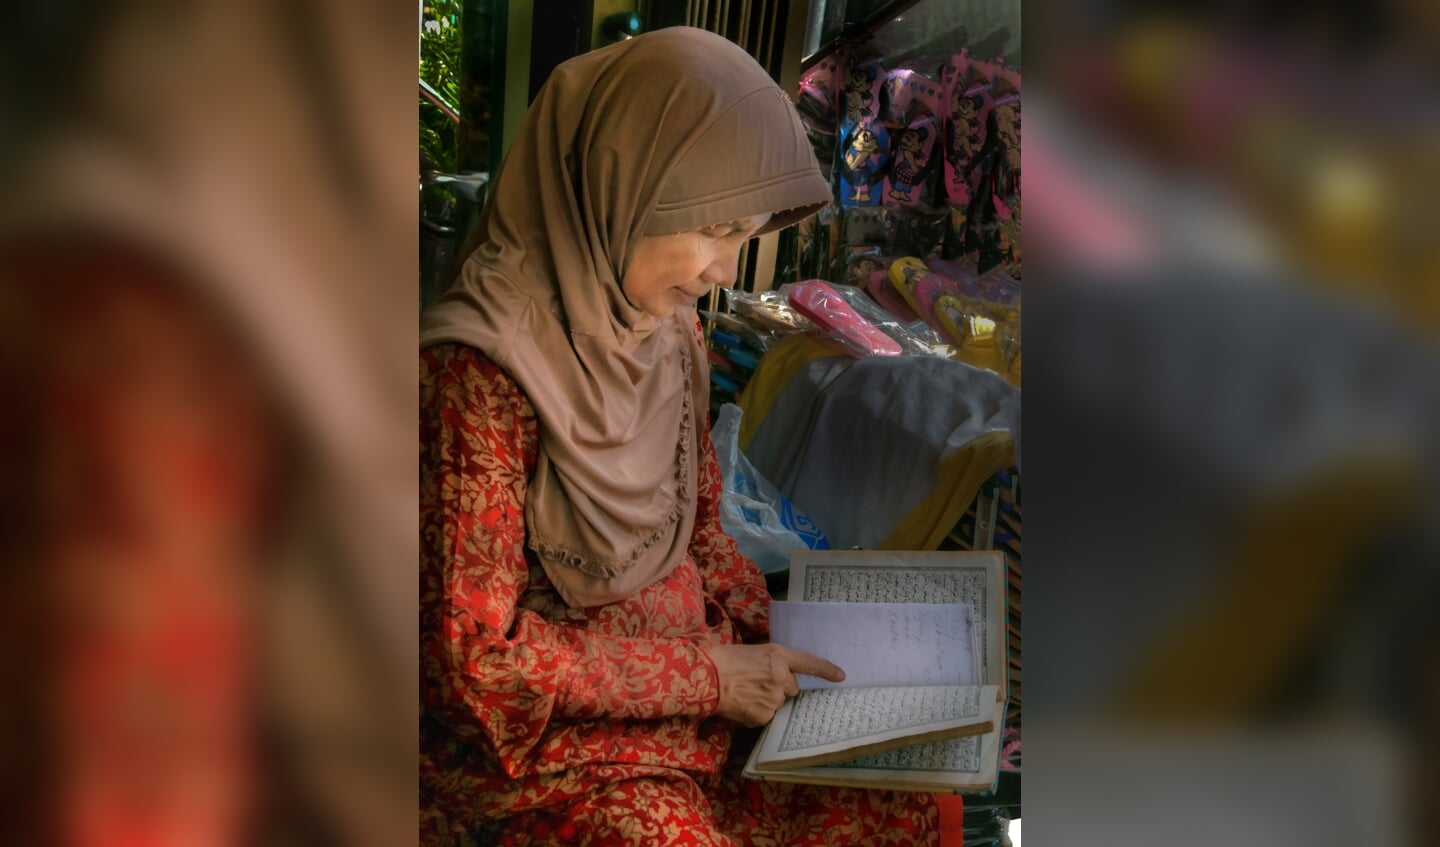 Derde prijs: Moslima leest Koran in de winkel en heeft even geen tijd voor klanten. Toegewijd en devoot. 